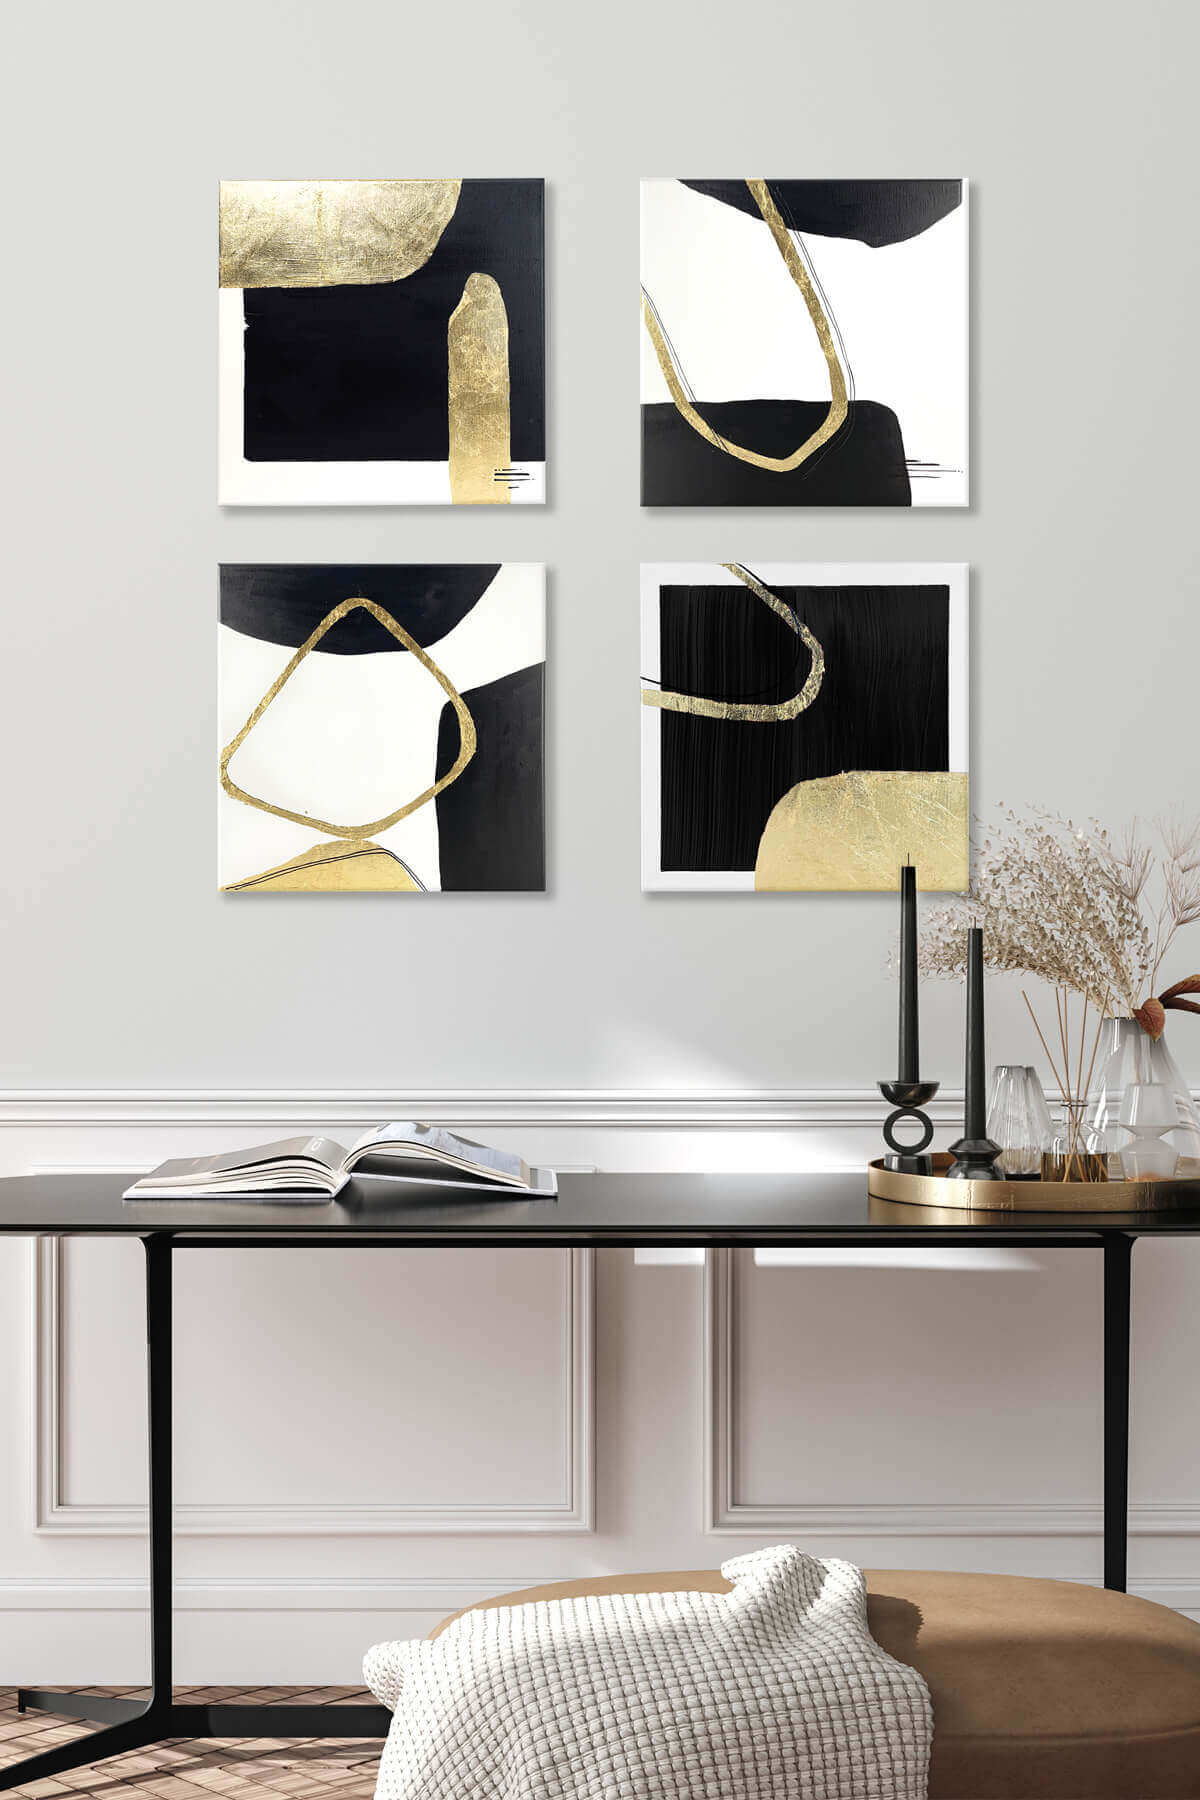 Obraz w salonie nad konsolą, abstrakcja na płótnie, czarny, biały złoto